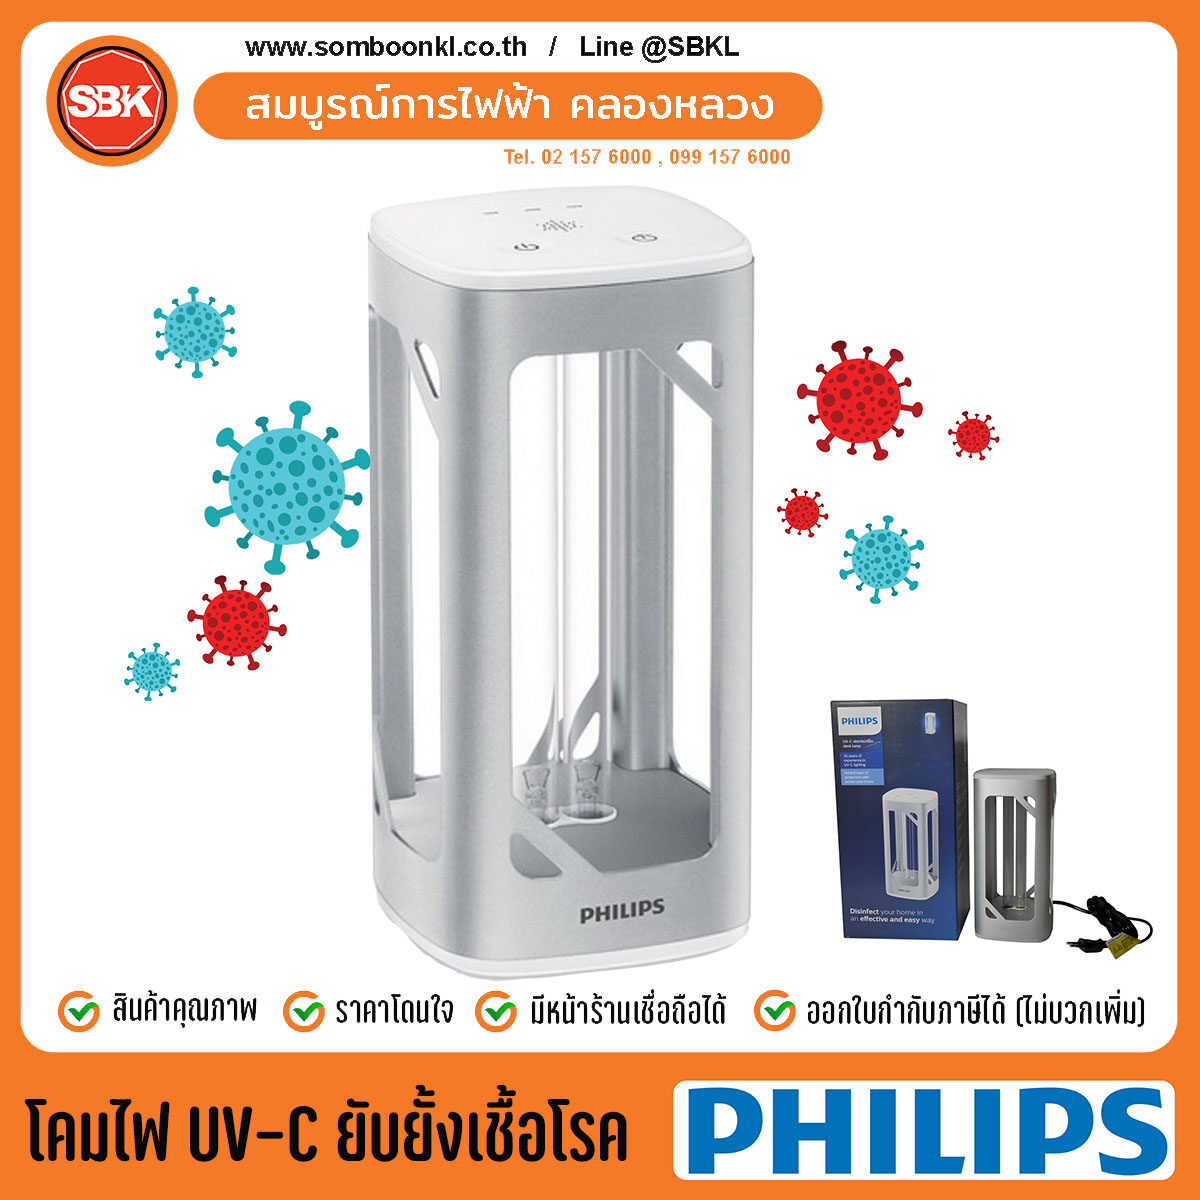 โคมไฟ ยับยั้งเชื้อโรค แบบตั้งโต๊ะ UV-C Disinfection Desk Lamp 24W สีเงิน , สีชมพู(Rose Gold) #Philips